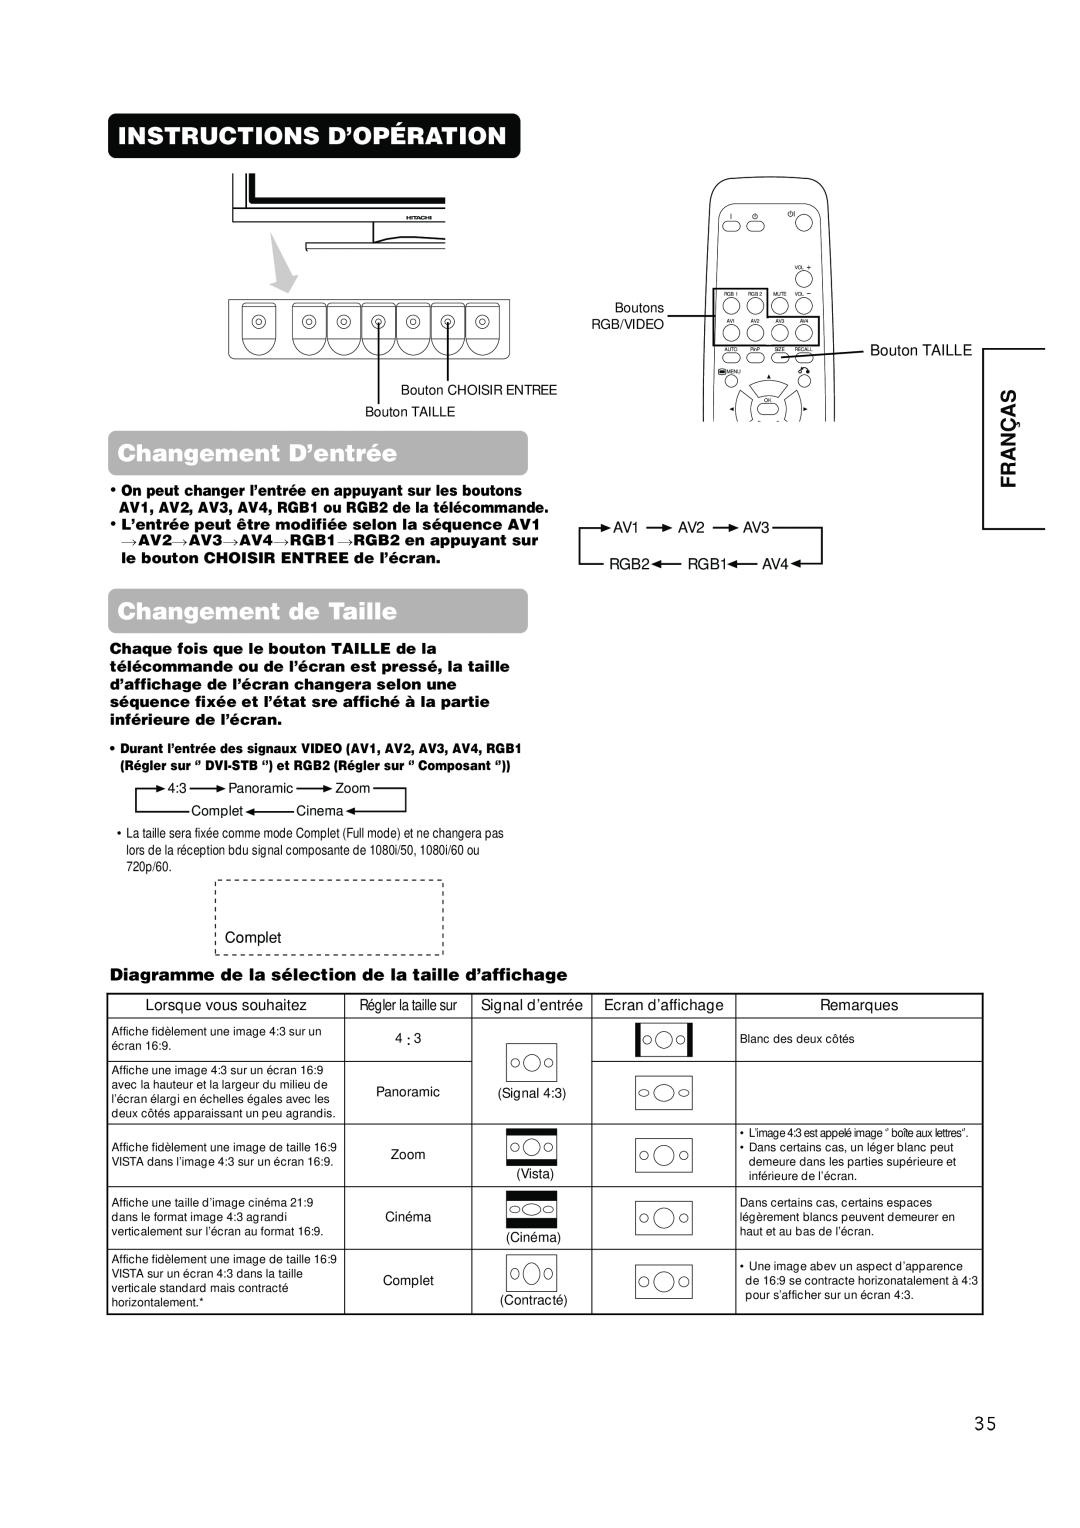 Hitachi PW1A user manual Instructions D’Opération, Changement de Taille, Fran, Changement D’entrée 